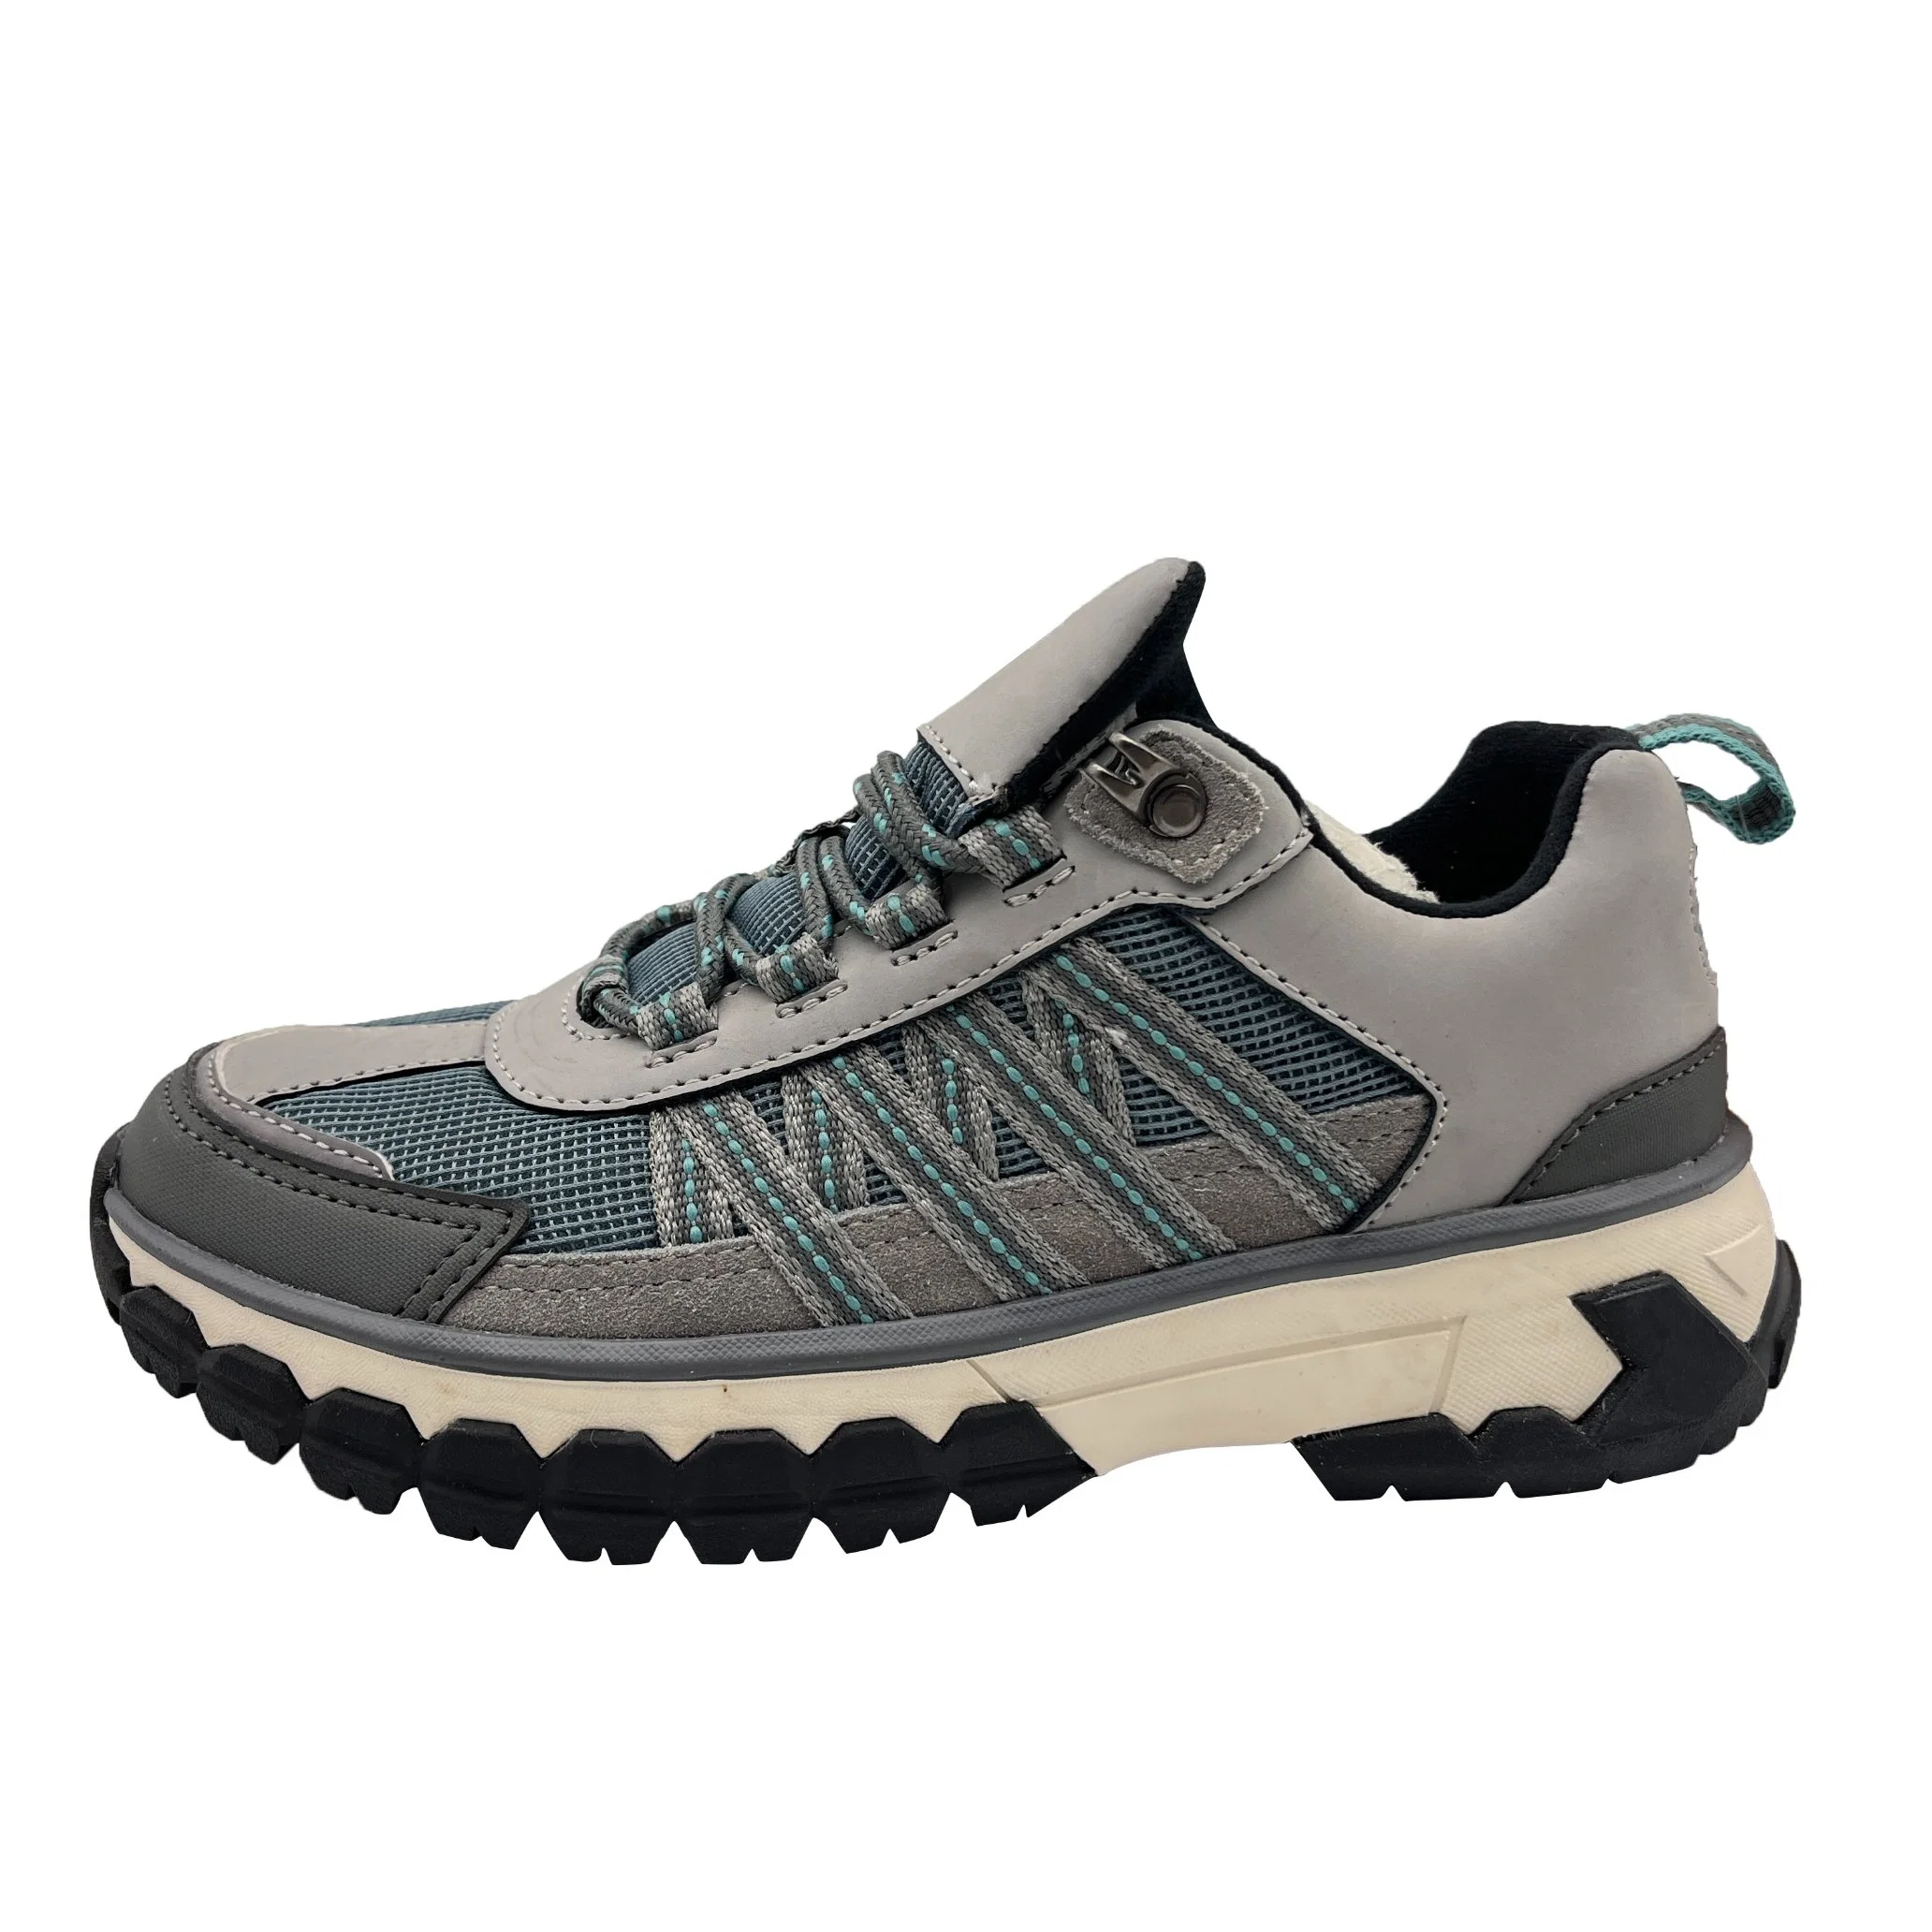 Chaussures de randonnée Nouveau style Hommes Extérieur Hiver Coton isolé Antidérapant Escalade Sport